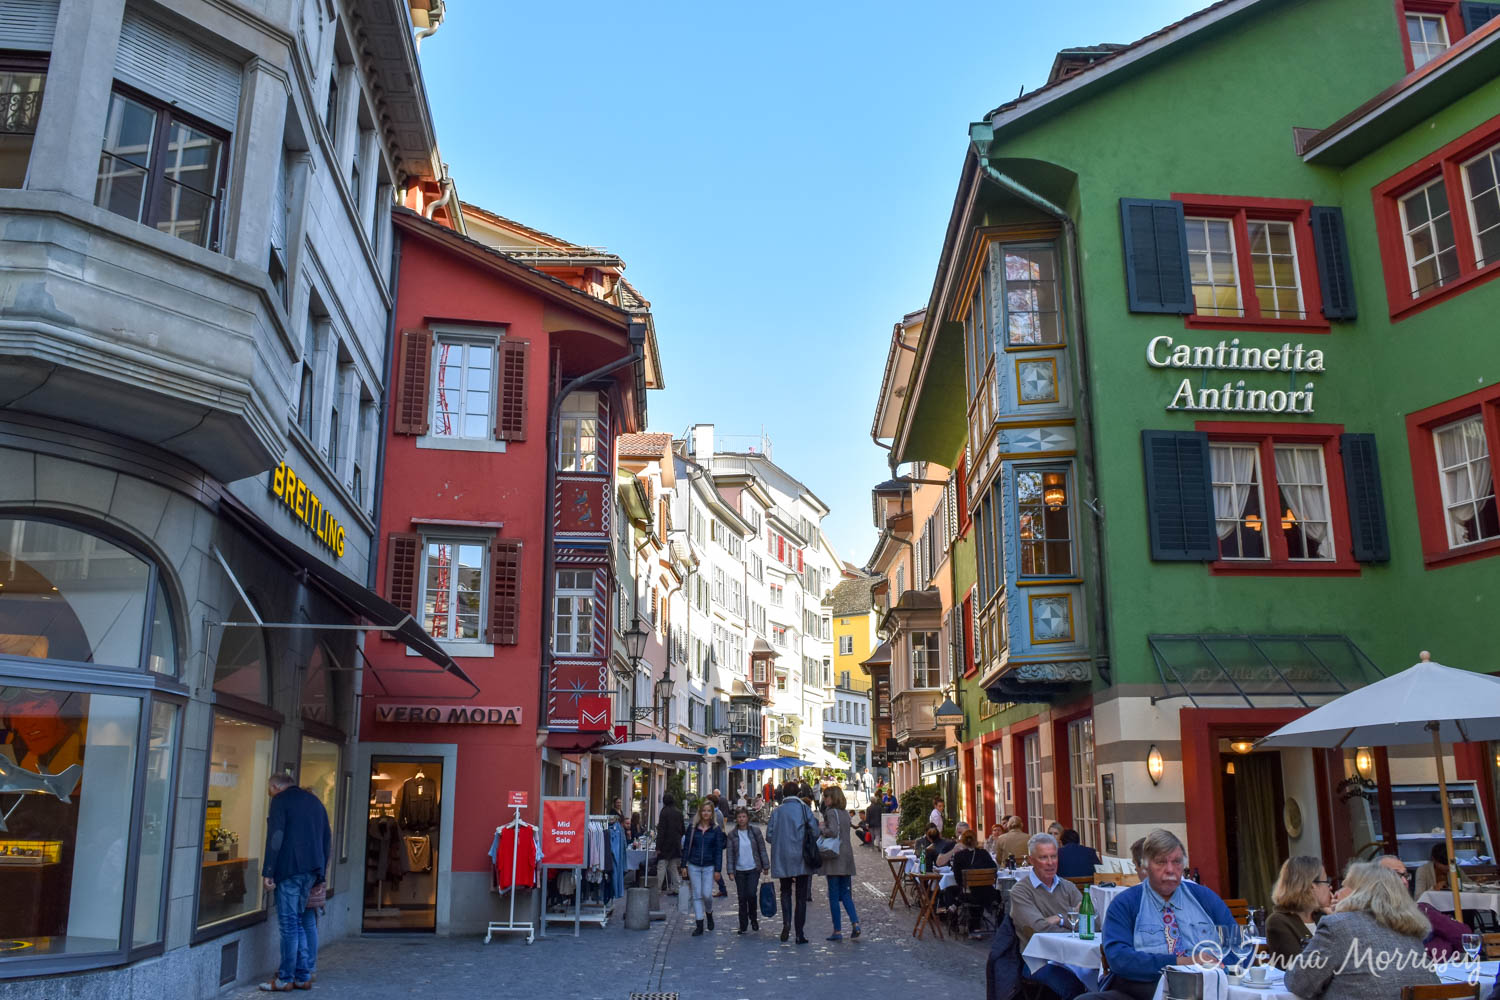 A Zurich Walking Tour